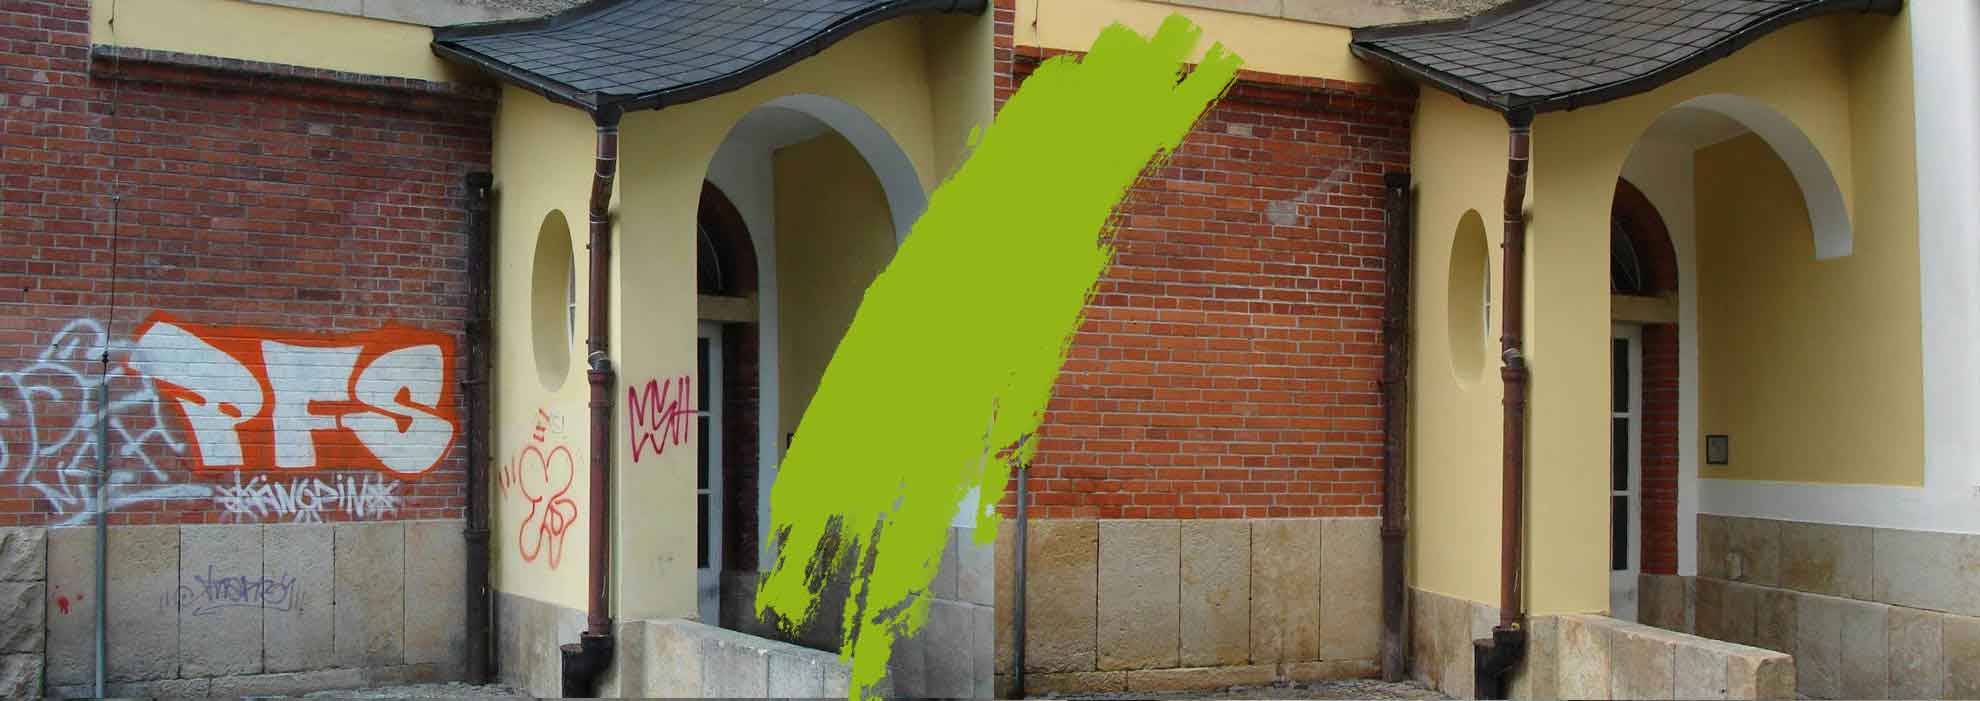 Odstraňování grafitů ze zdí